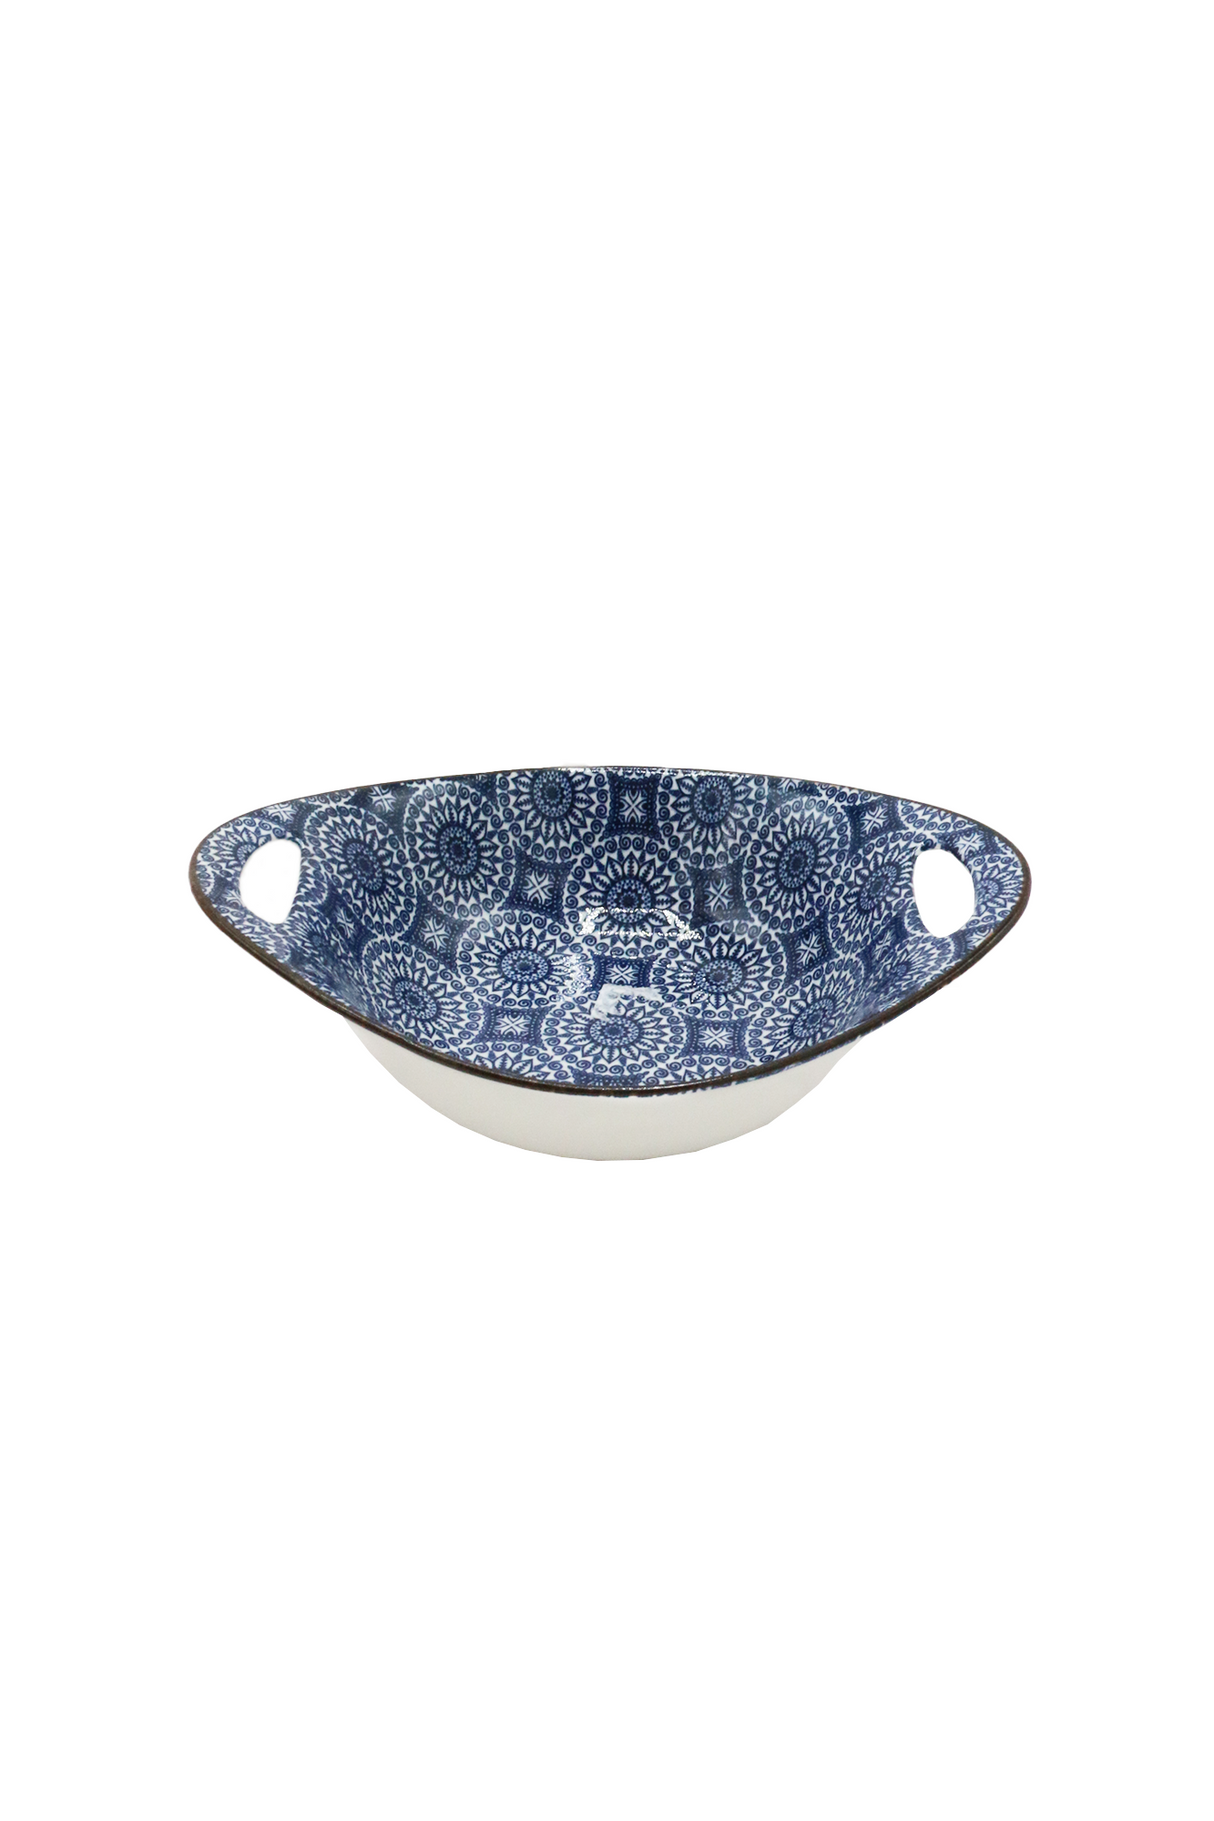 bowl 6" m27-16 china